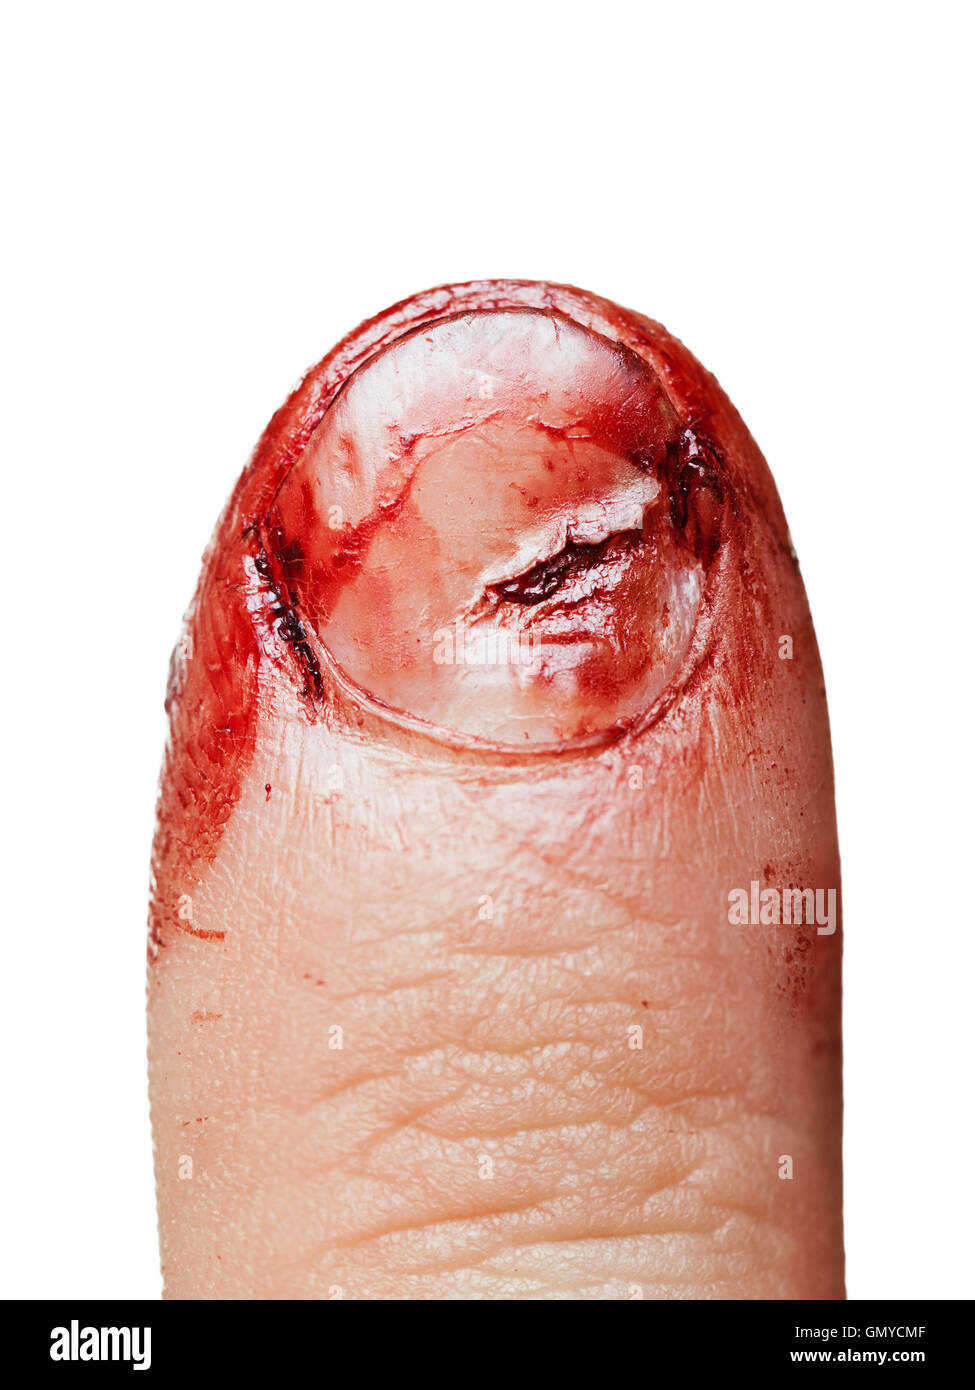 Herida de sangre la uña del dedo Foto de stock